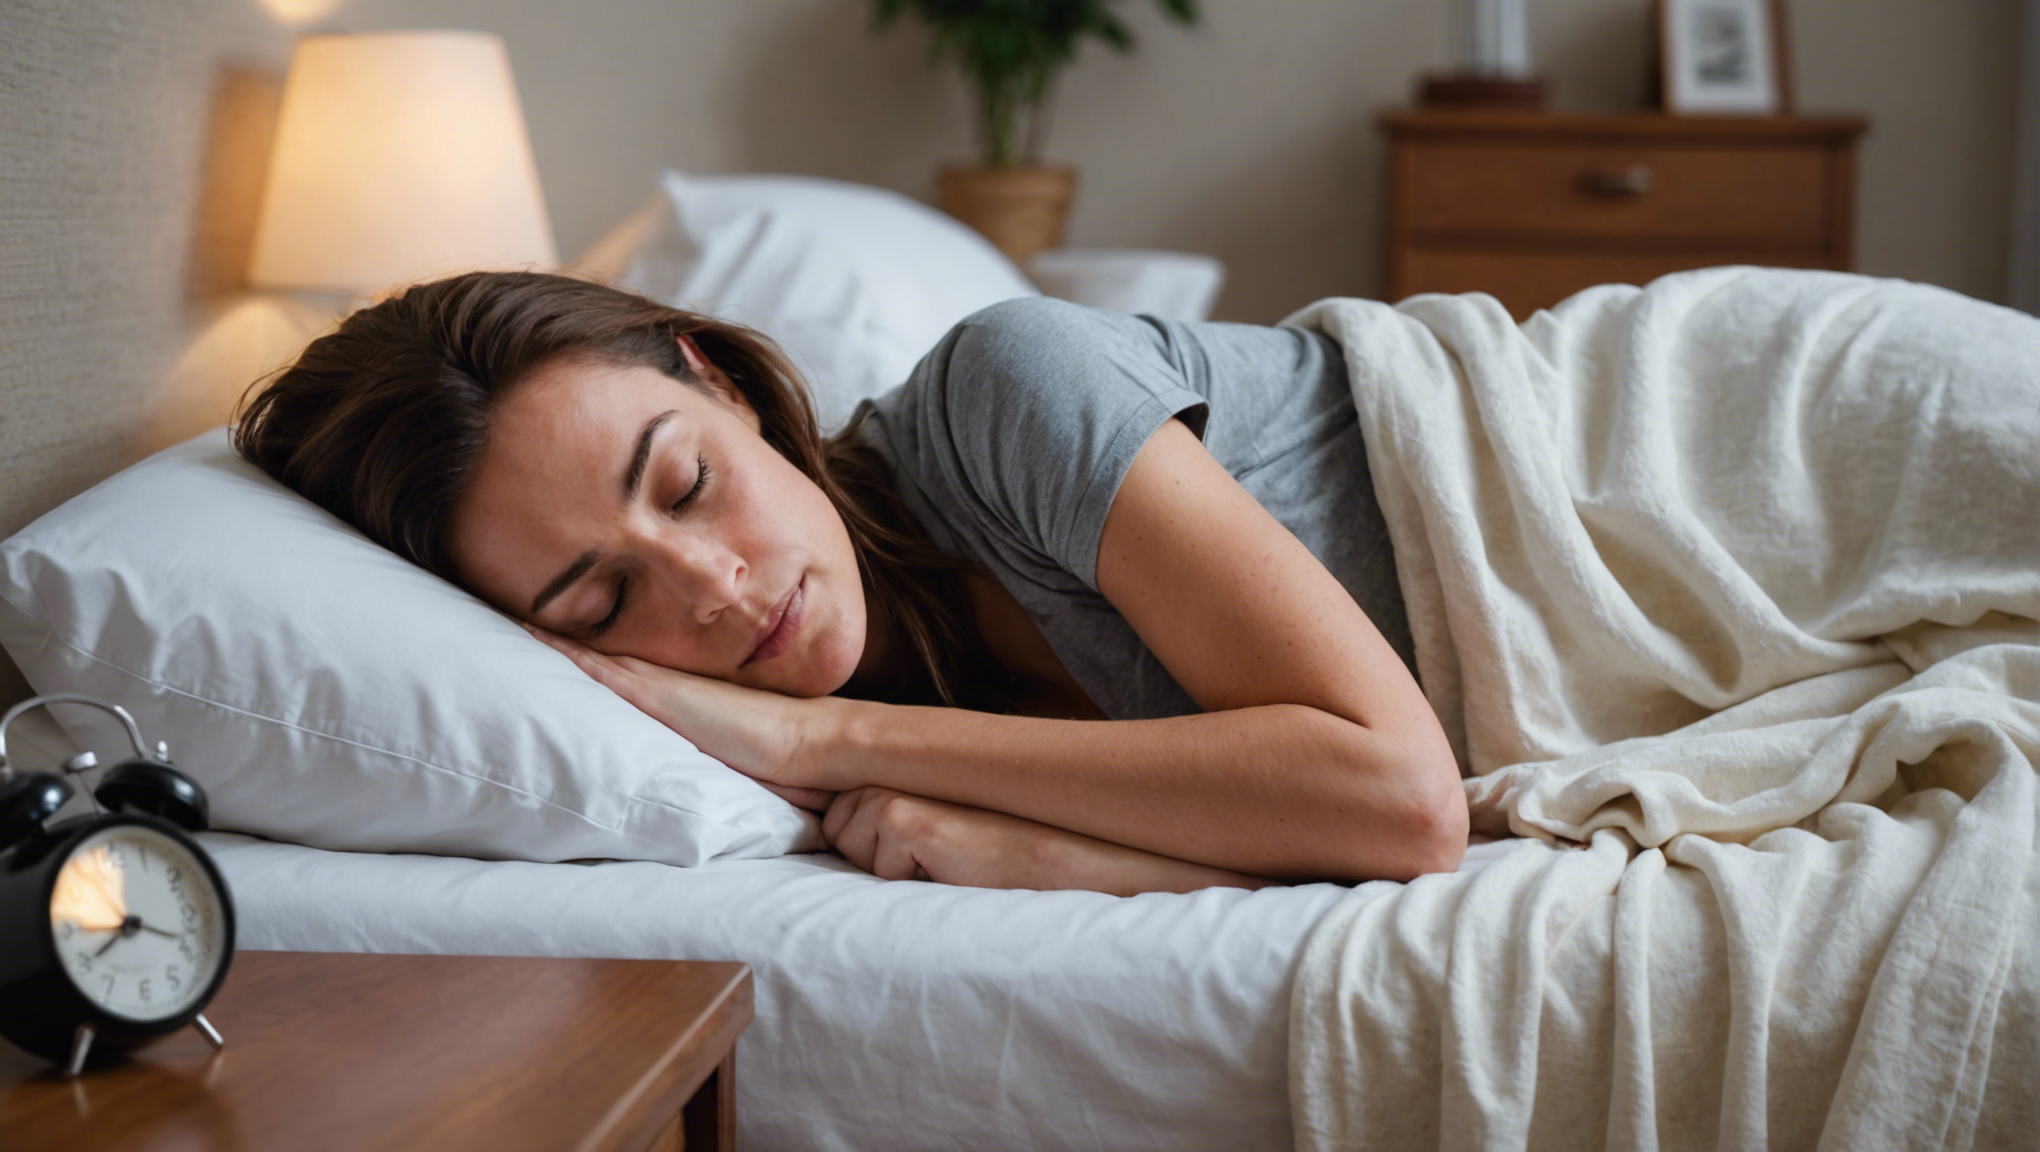 découvrez nos conseils pratiques pour réussir votre cure de sommeil à la maison et retrouver un sommeil réparateur rapidement.